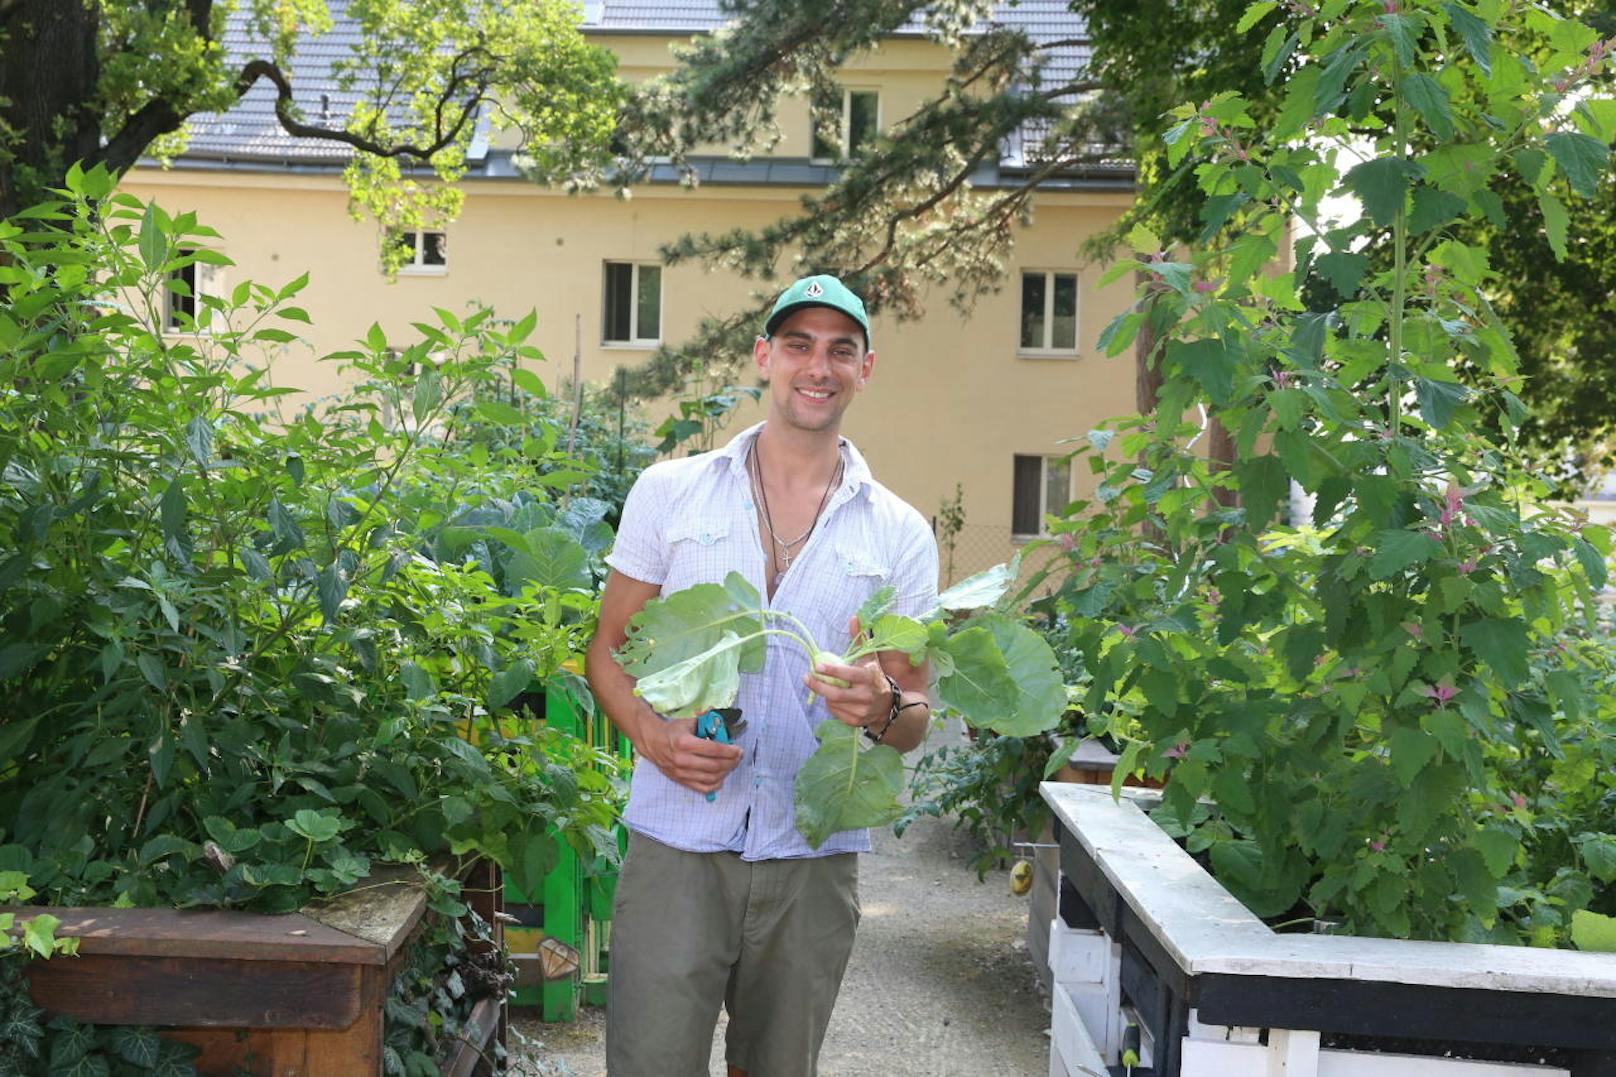 Mit dem selbst geernteten Gemüse versorgen sich die Gemeindebau-Mieter zum Teil selbst. "Der Knoblauch hat das ganze Jahr gereicht", erzählt Michael Roser.